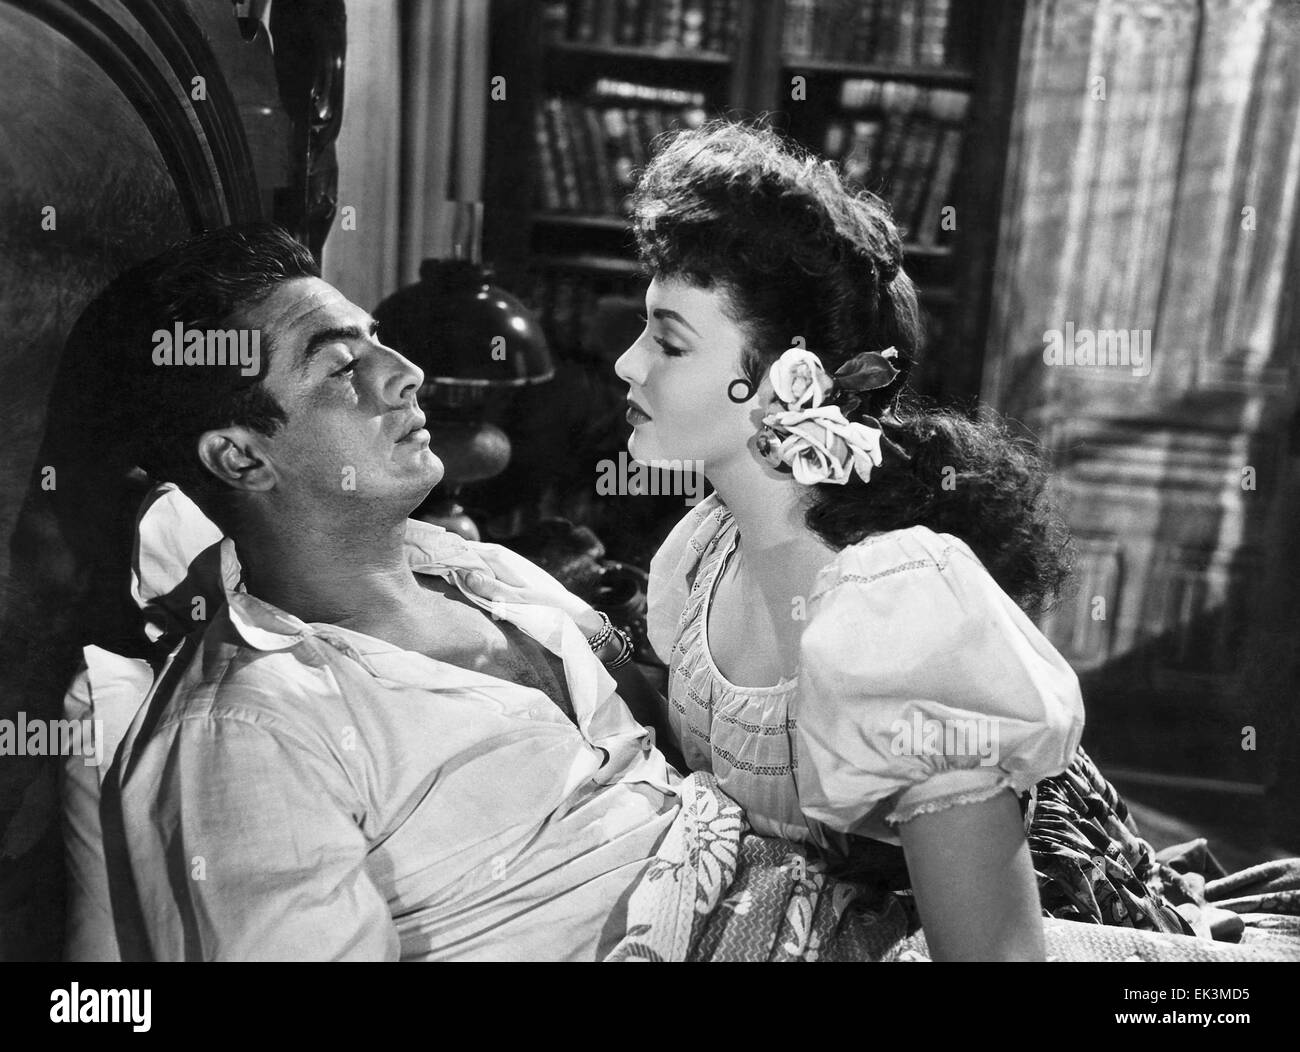 Victor mature, Linda Darnell, sur-ensemble du film 'My Darling Clementine', 1946, 20th Century Fox Film Corp. Tous droits réservés Banque D'Images